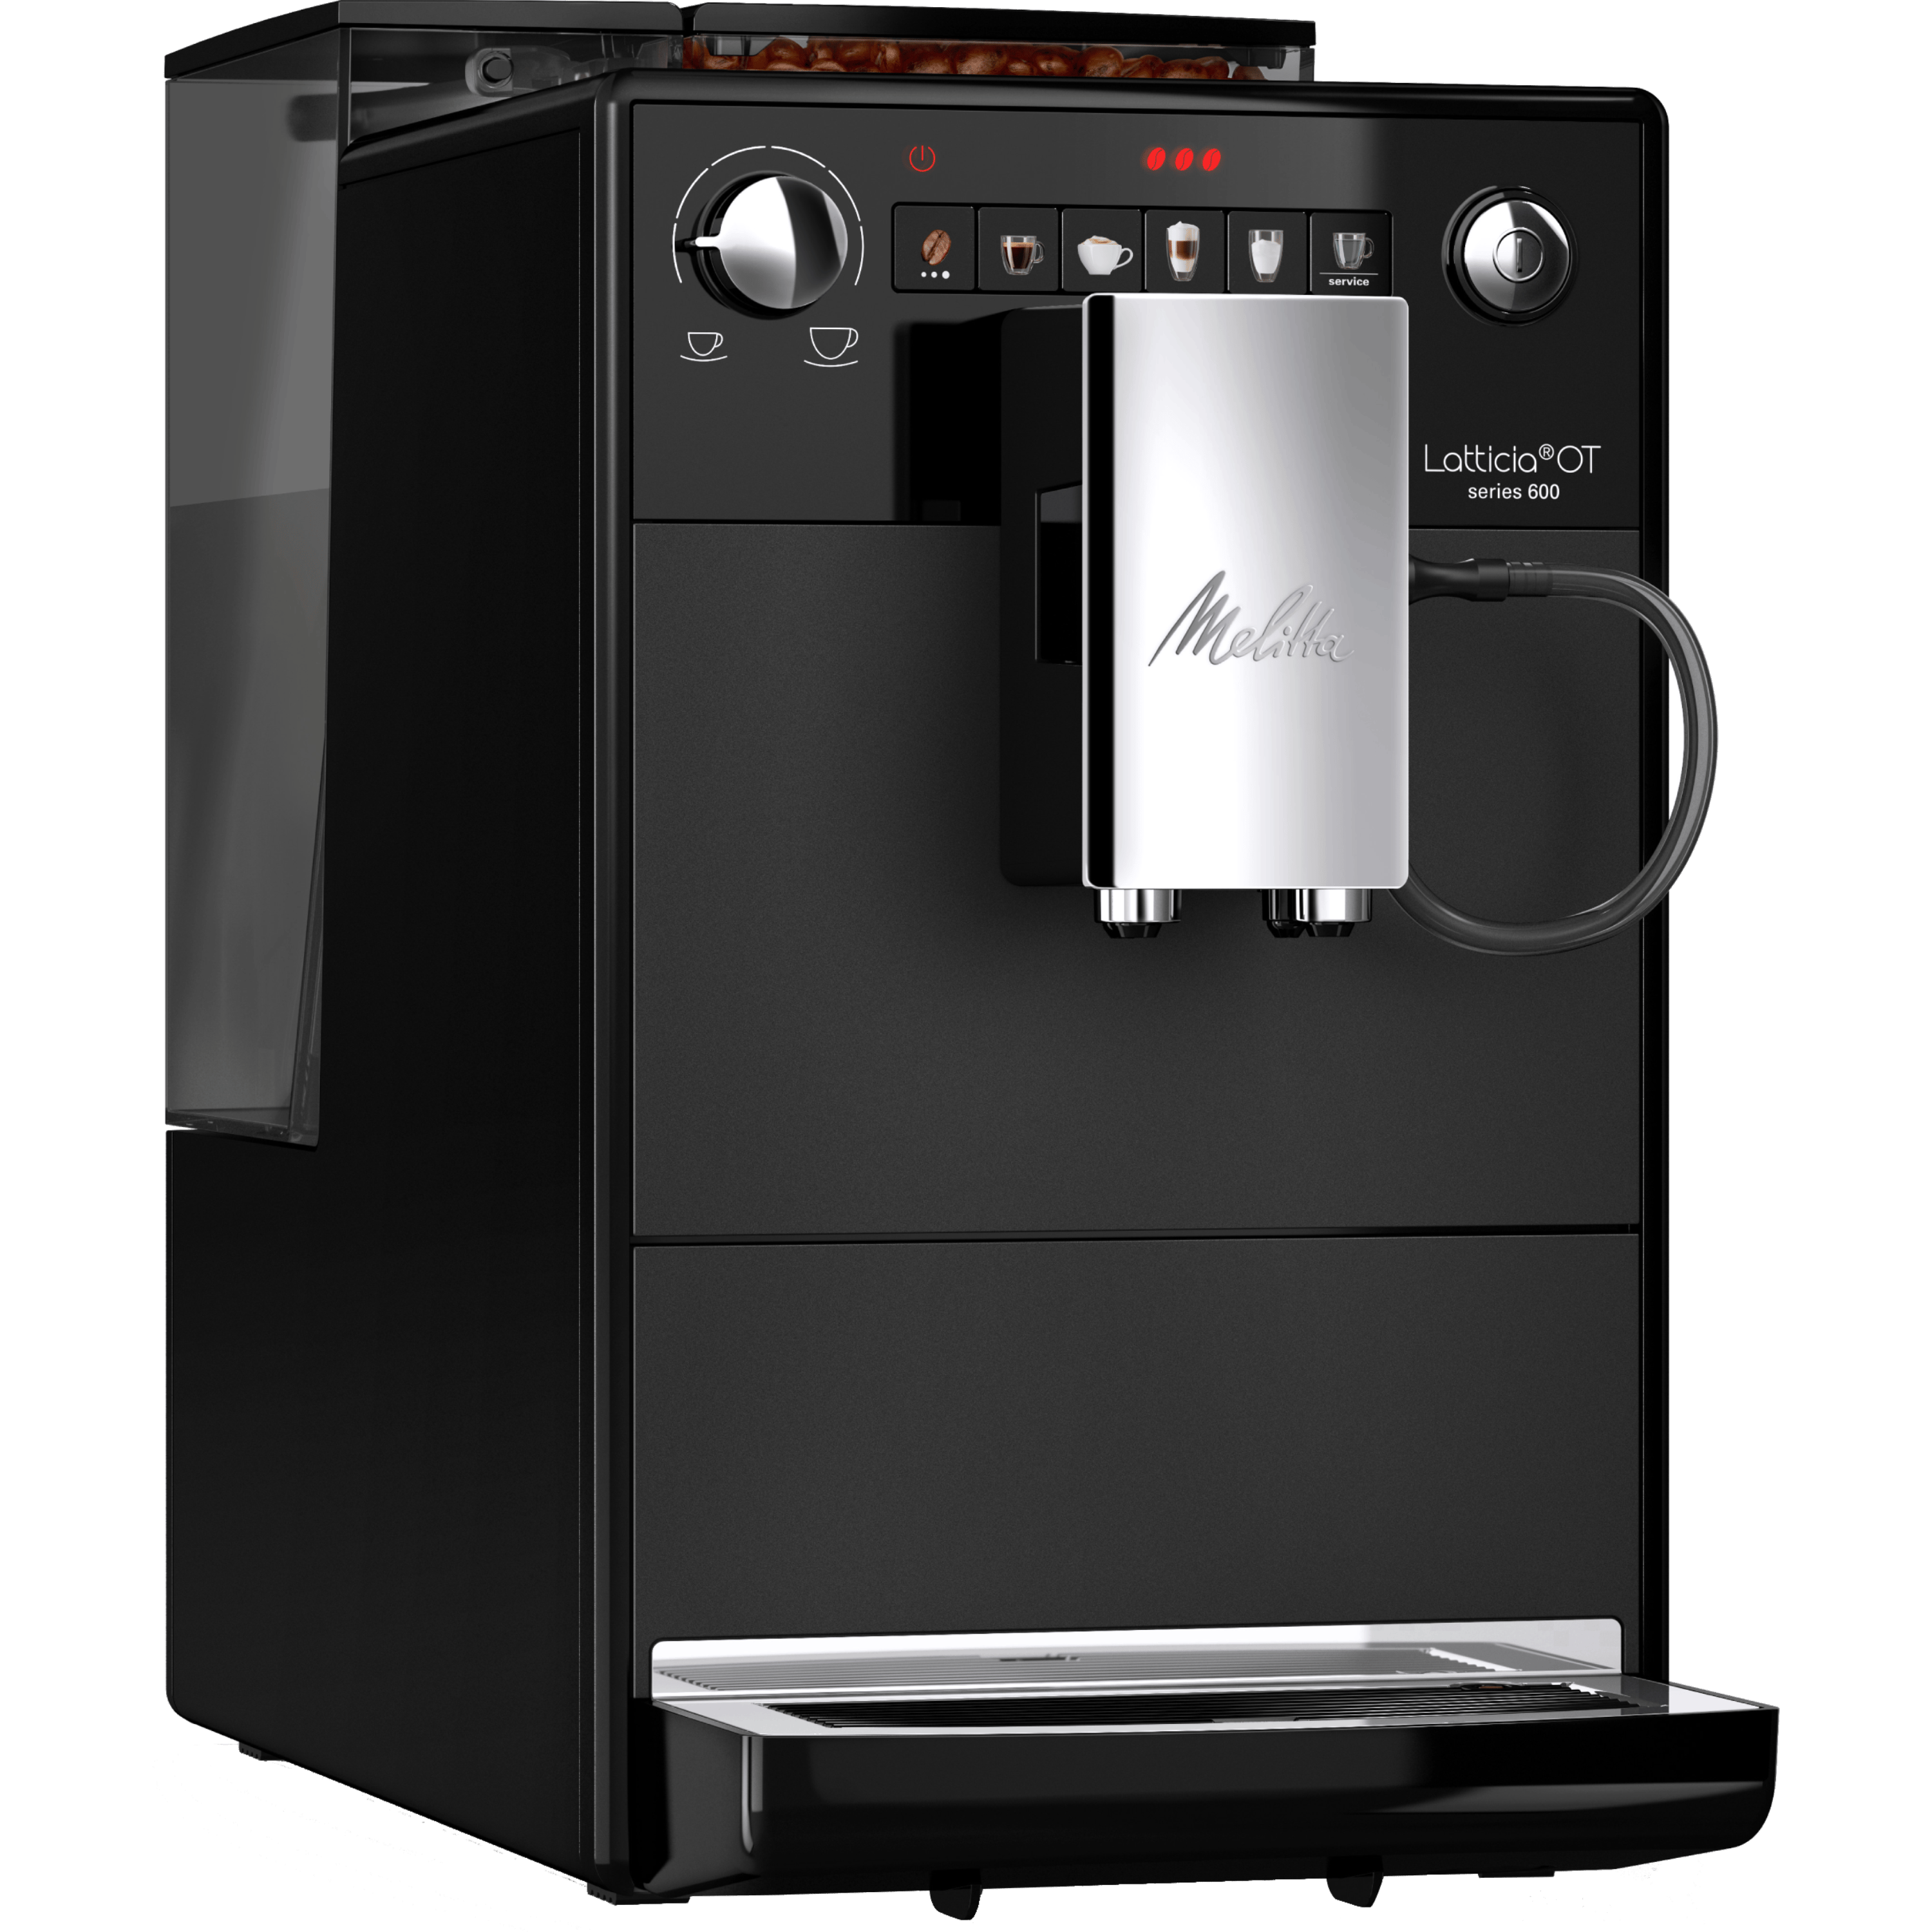 מכונת קפה אוטומטית למגוון משקאות בלחיצת כפתור Melitta Latticia - שחור שנה אחריות ע